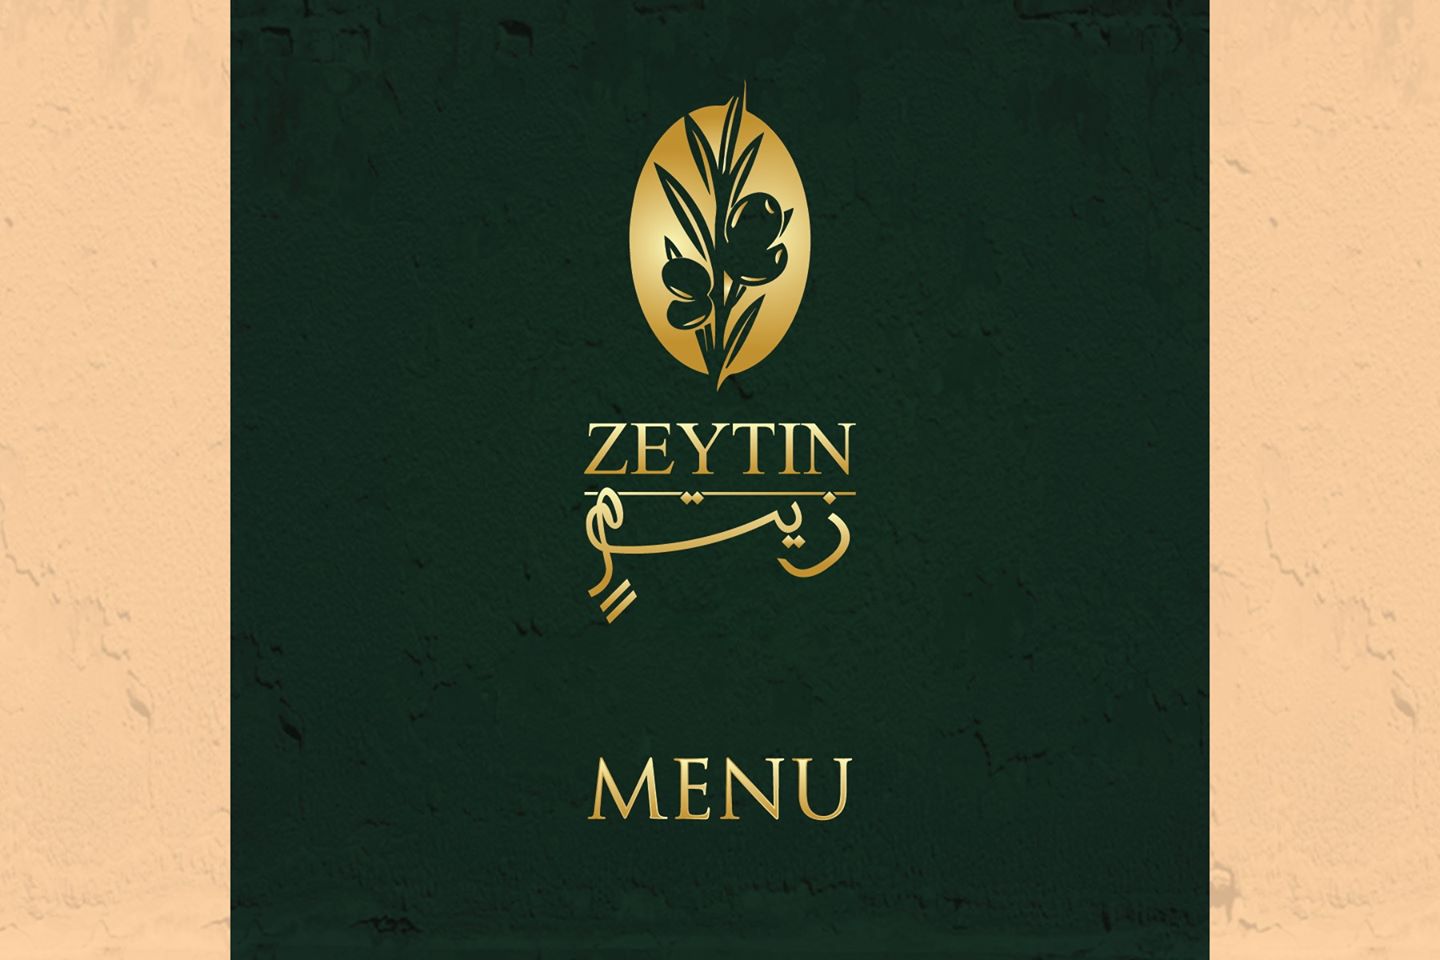 Zeytin turkish restaurant menu